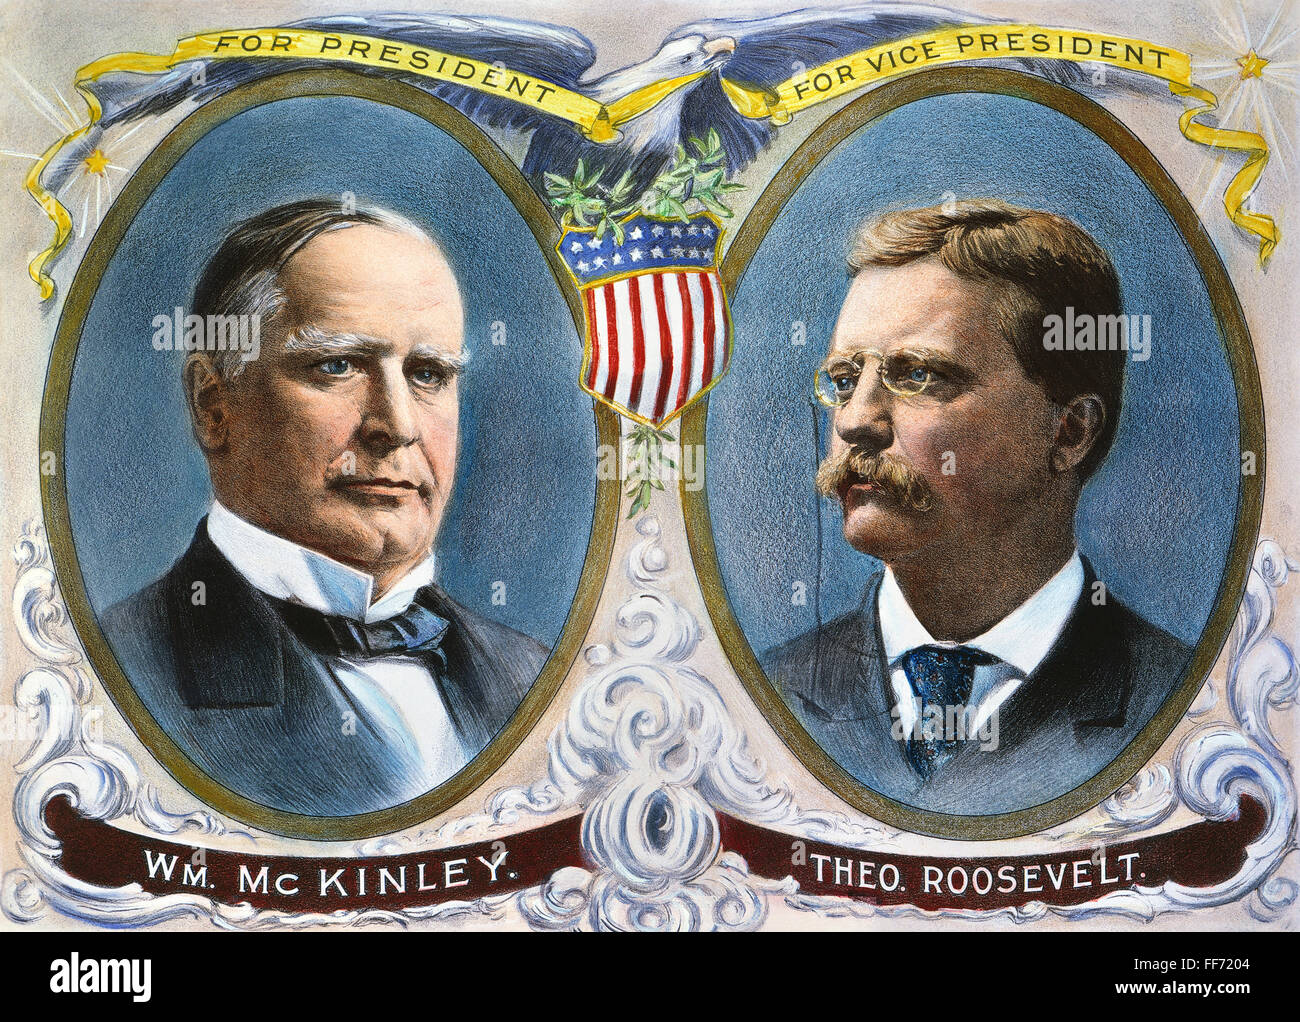 Campagne présidentielle, 1900. /NWilliam McKinley et Theodore Roosevelt que les candidats républicains à la présidence et vice-président sur une lithographie affiche de campagne. Banque D'Images